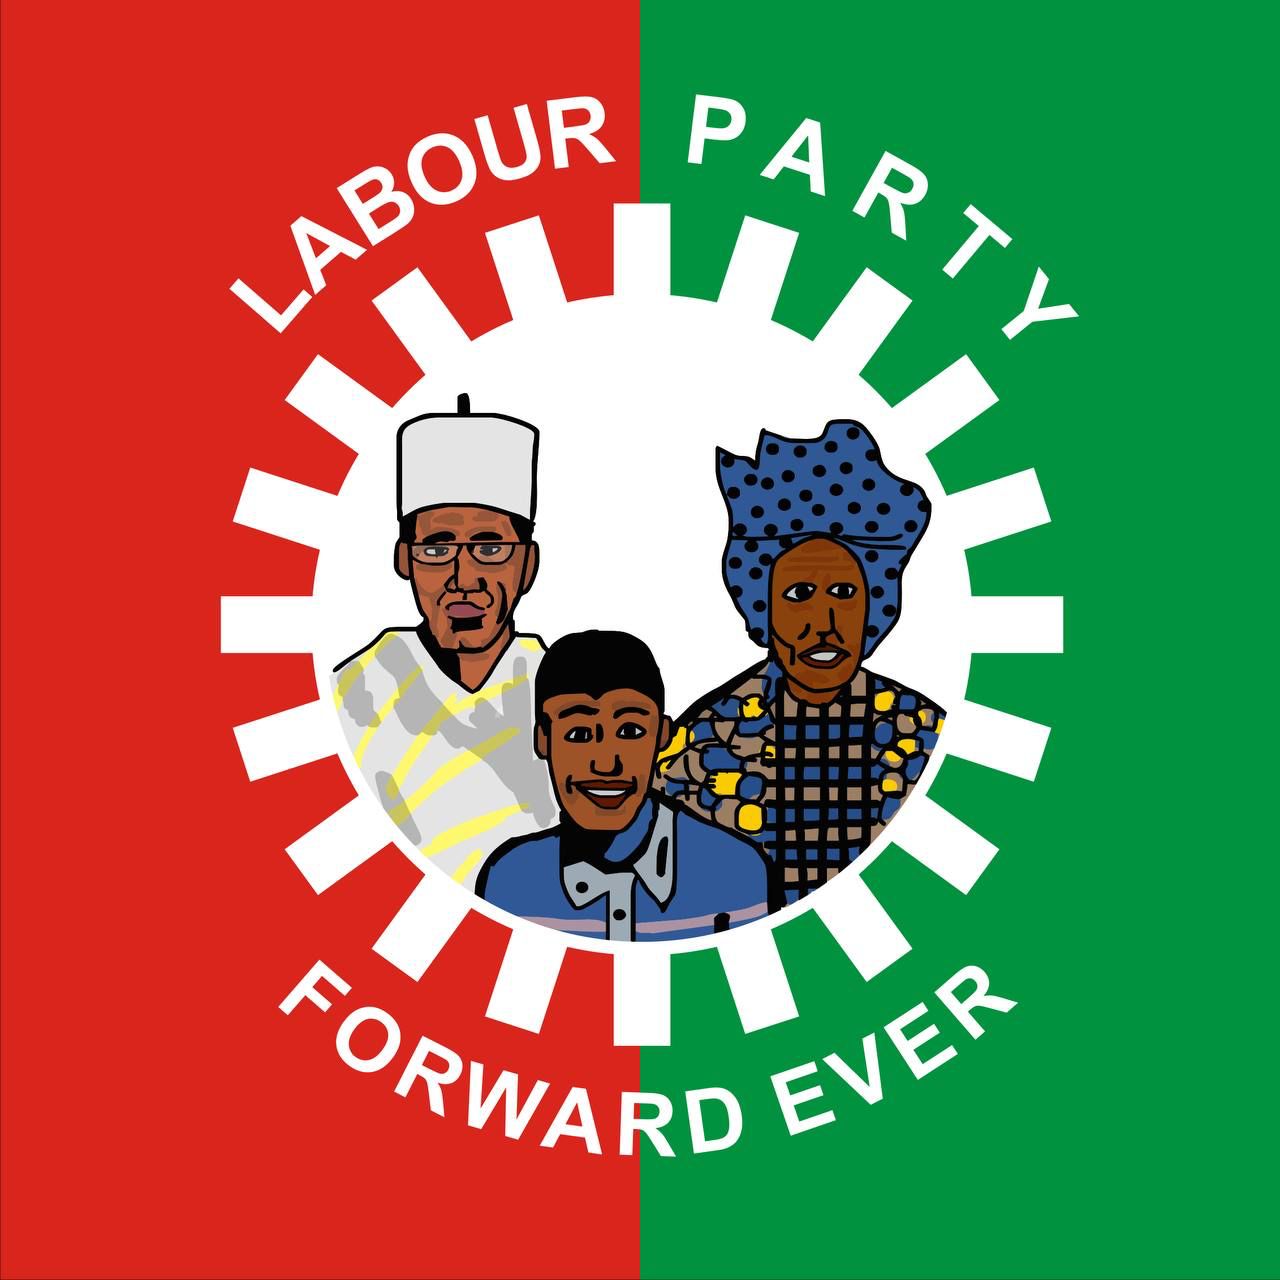 labour party logo